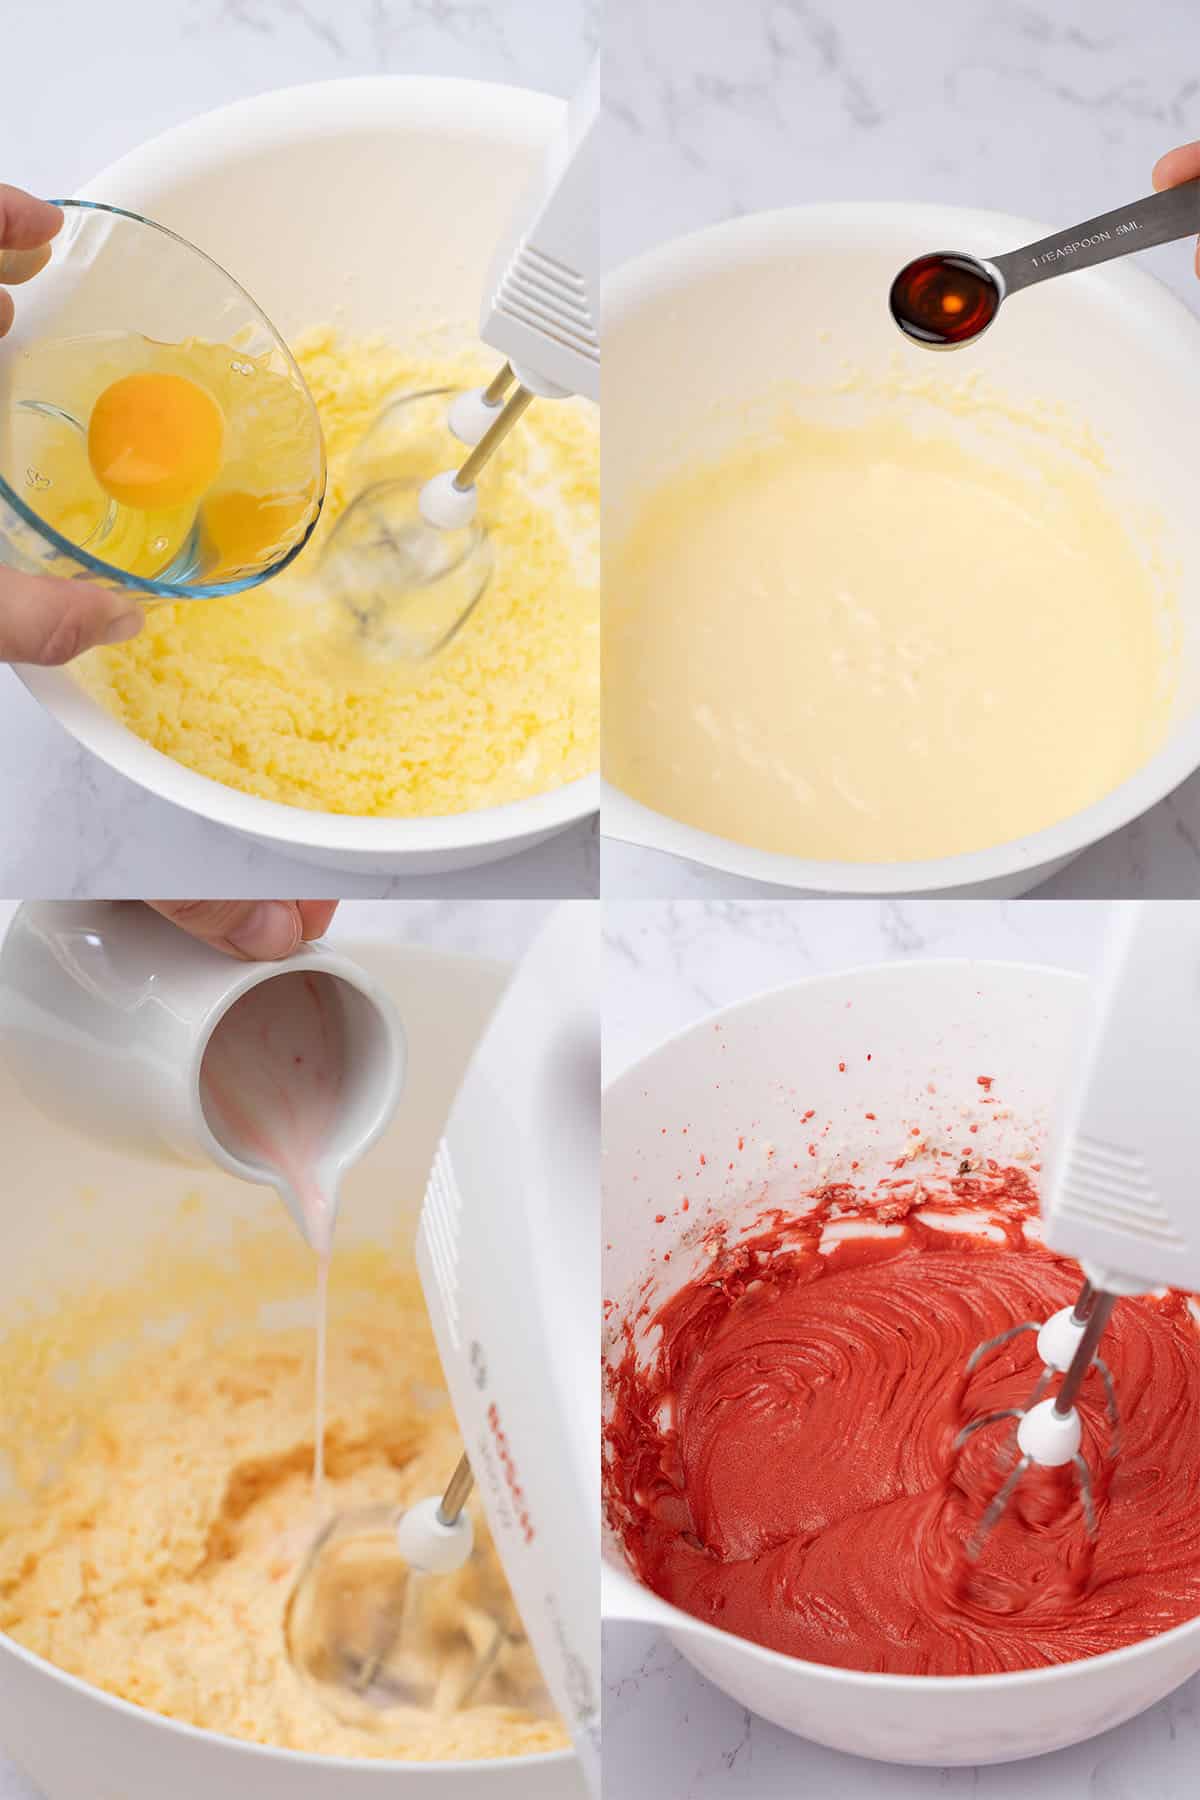 Red Velvet Muffins baking process.